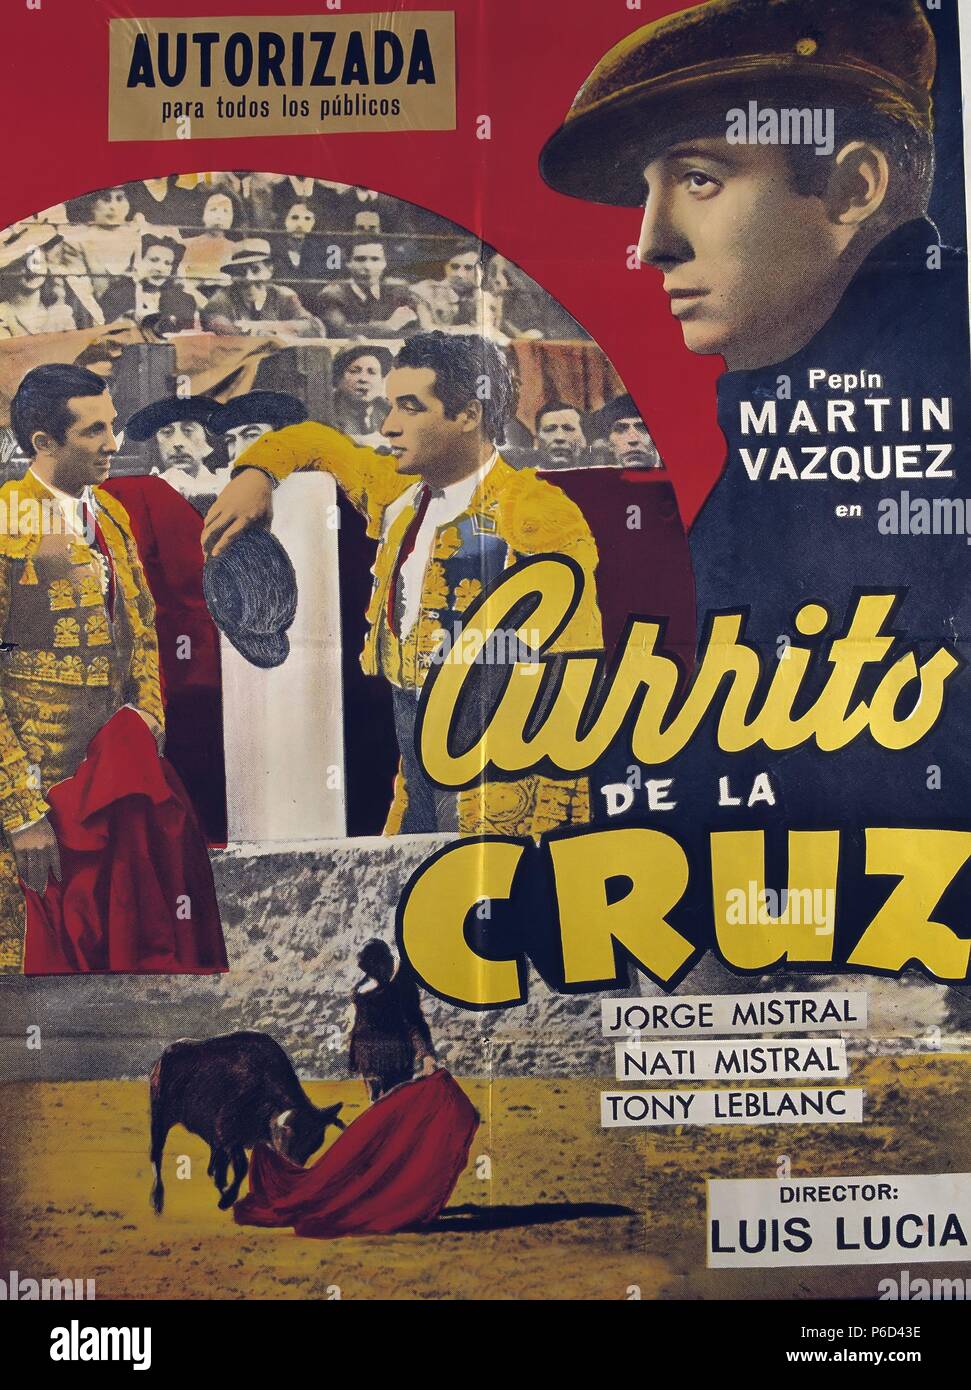 PELICULA : CURRITO DE LA CRIZ , 1948. BASADA EN LA NOVELA HOMONIMA DE ALEJANDRO PEREZ LUGIN. DIRECTOR : LUIS LUCIA. ACTORES : PEPIN MARTIN VAZQUEZ , JORGE MISTRAL , NATI MISTRAL. CARTEL CINE. Stock Photo